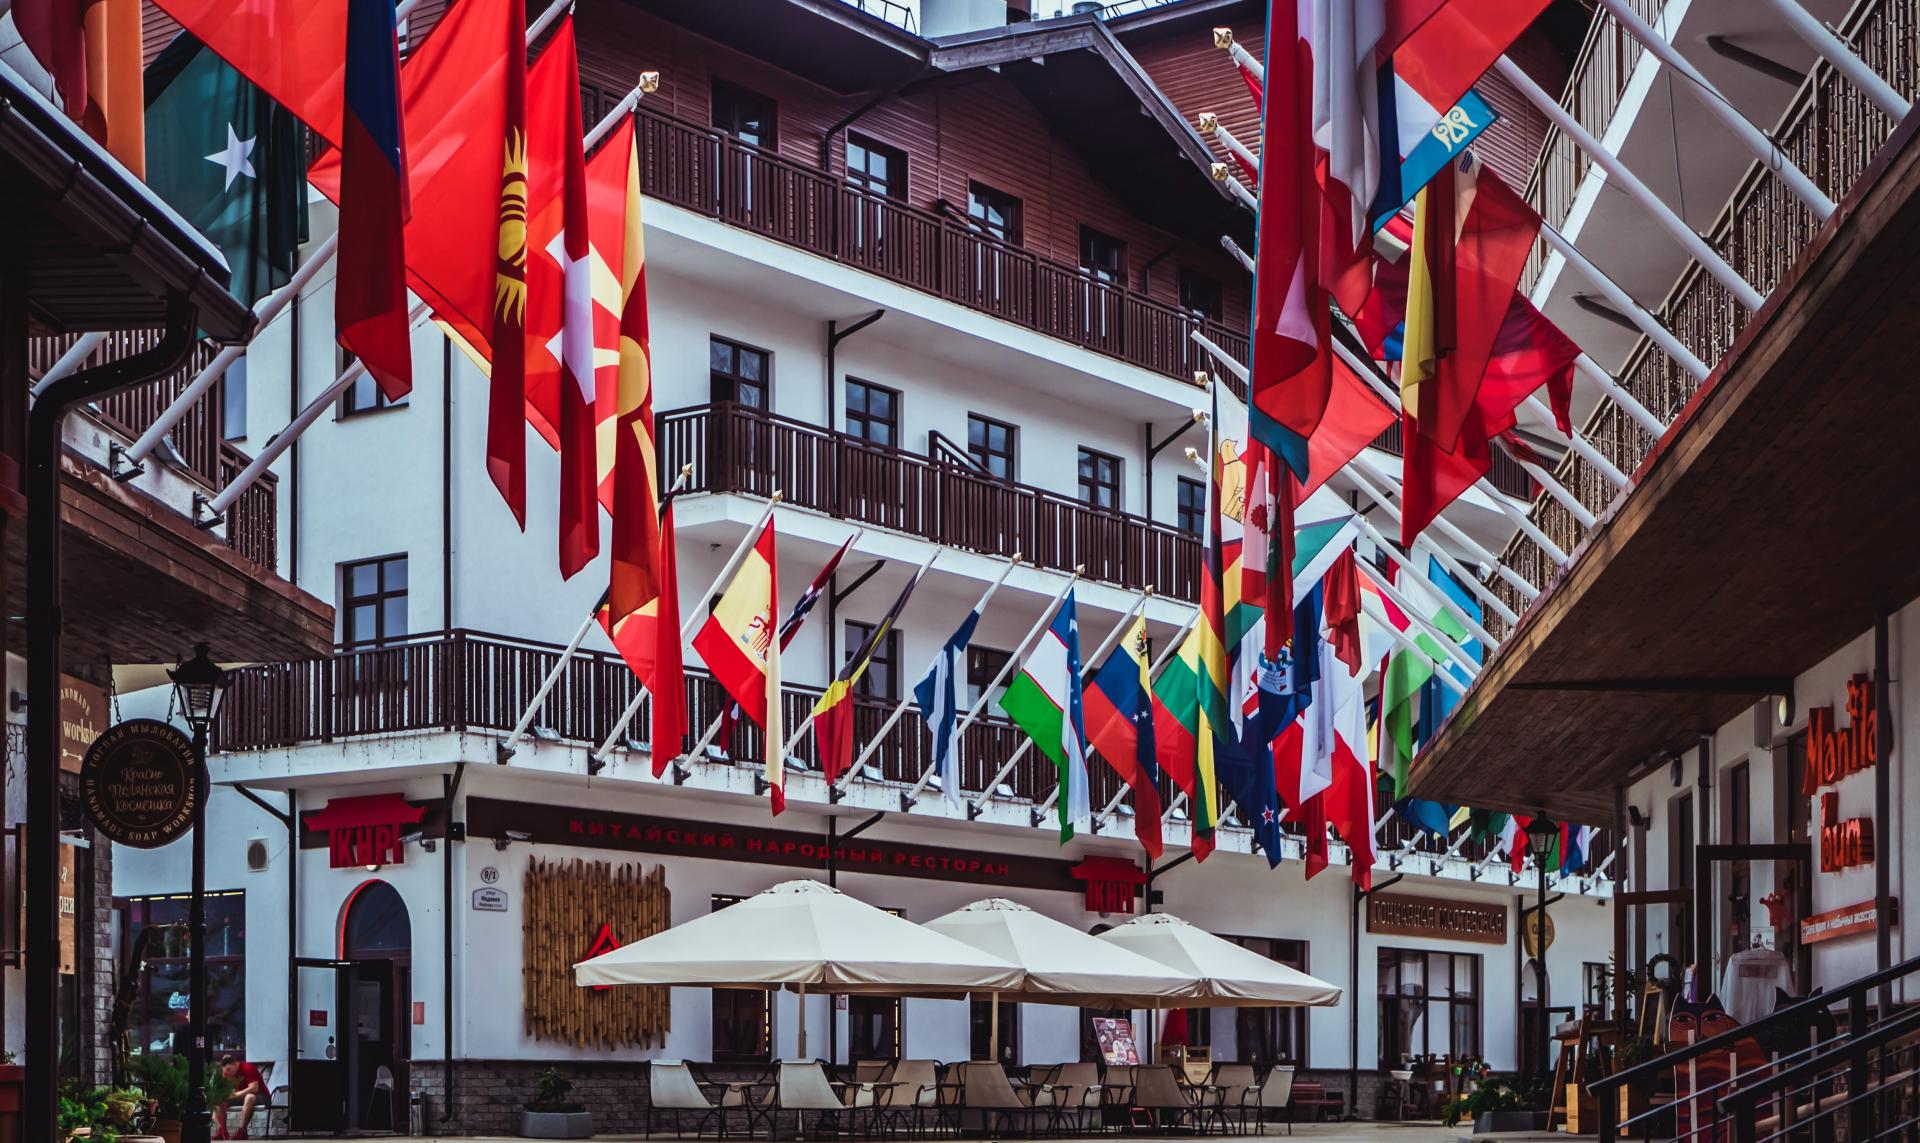 Hôtel restaurant international (station balnéaire russe Roza Hutori) avec nombreux drapeaux